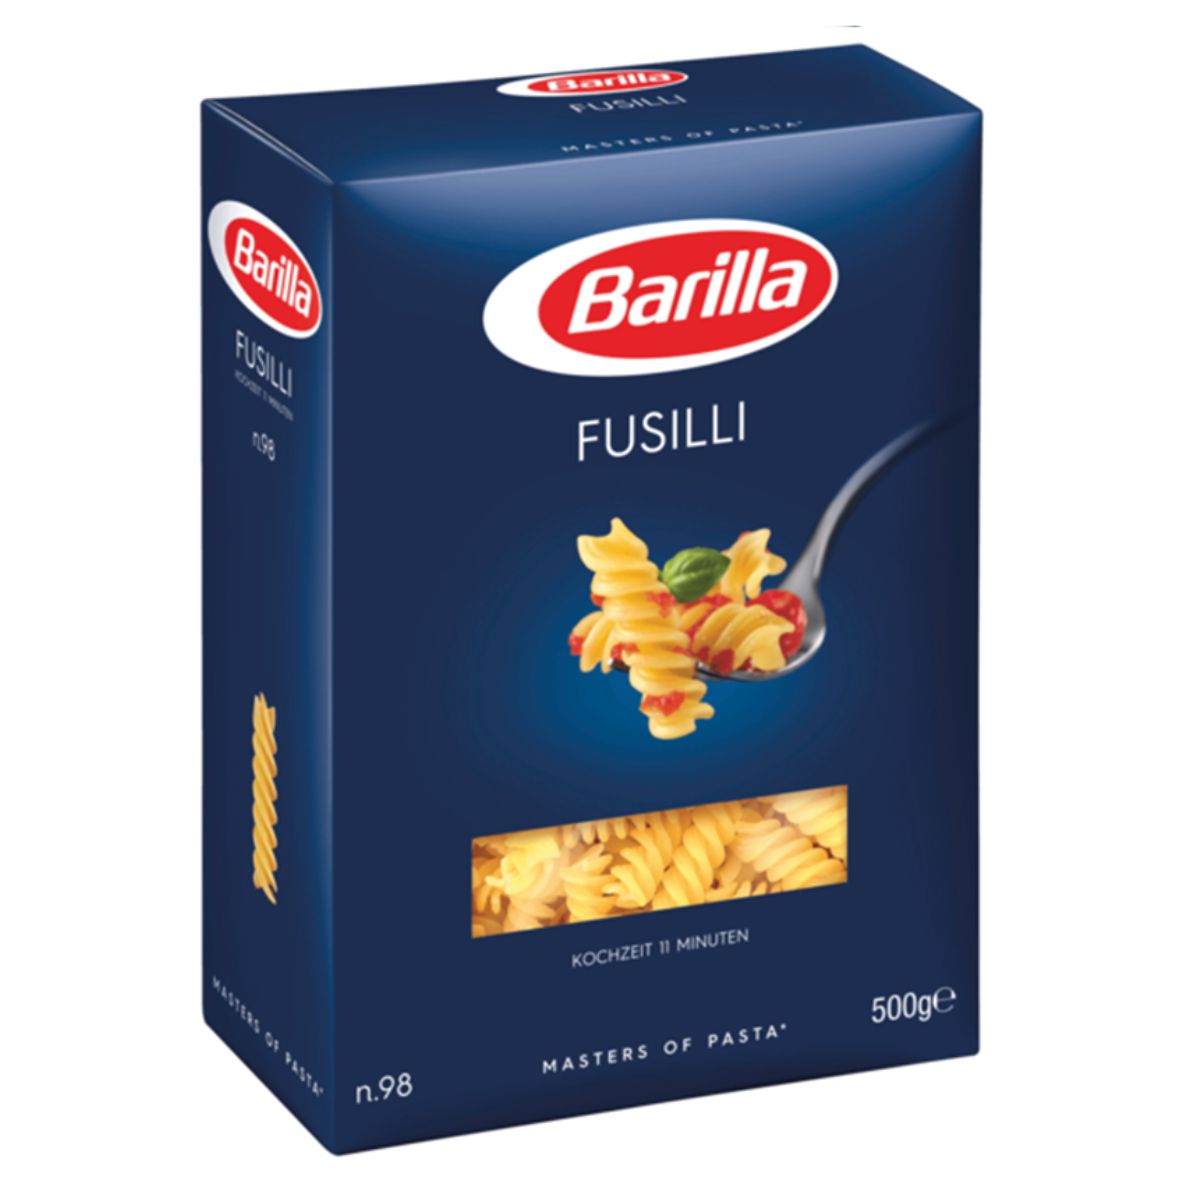 A box of Barilla - Fusilli - 500g pasta.